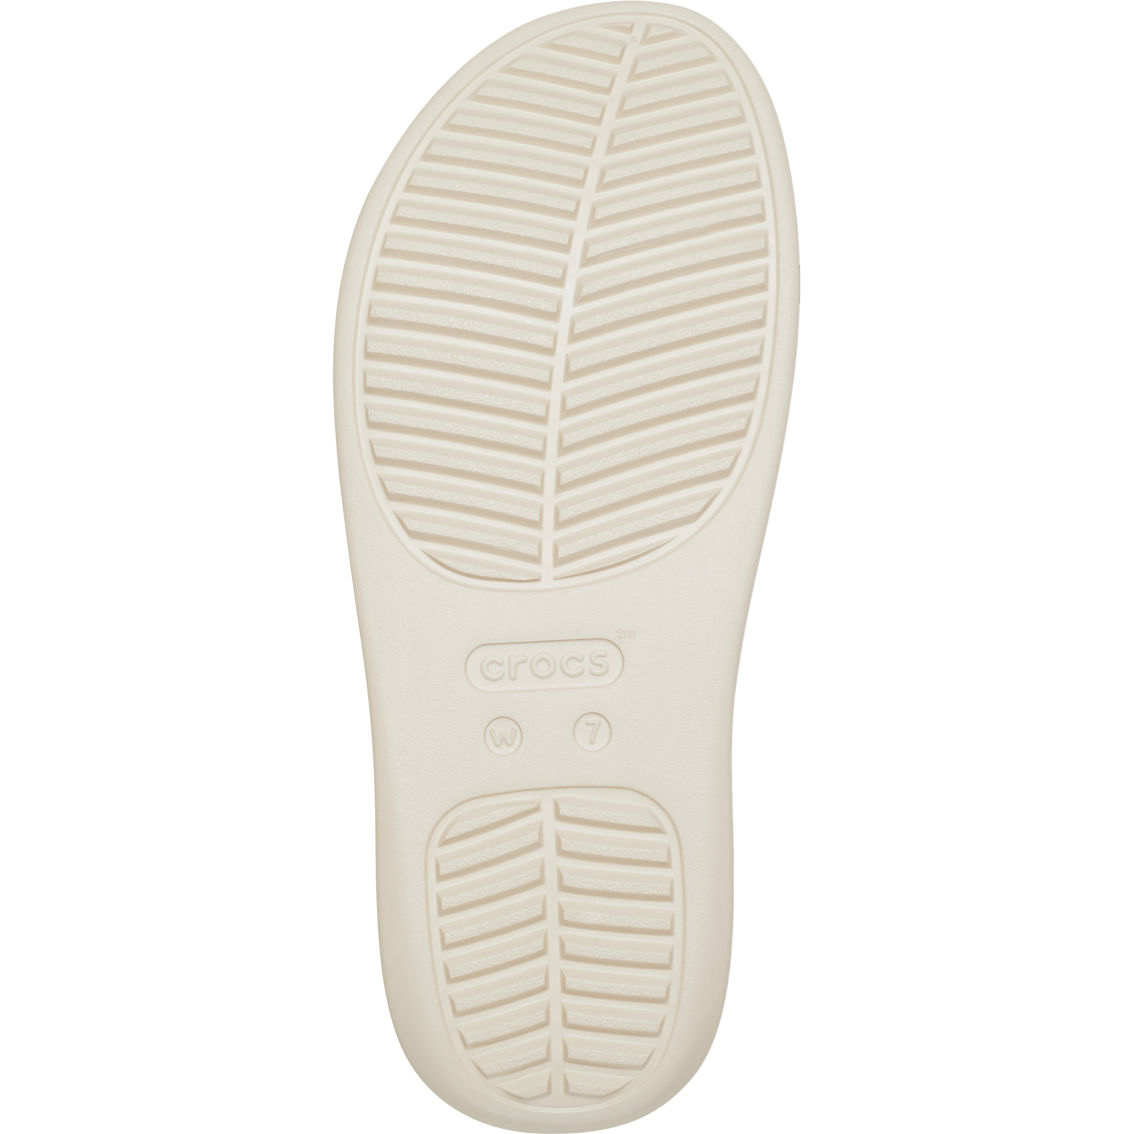 Crocs Women's Getaway Strappy Sandals - Image 5 of 6